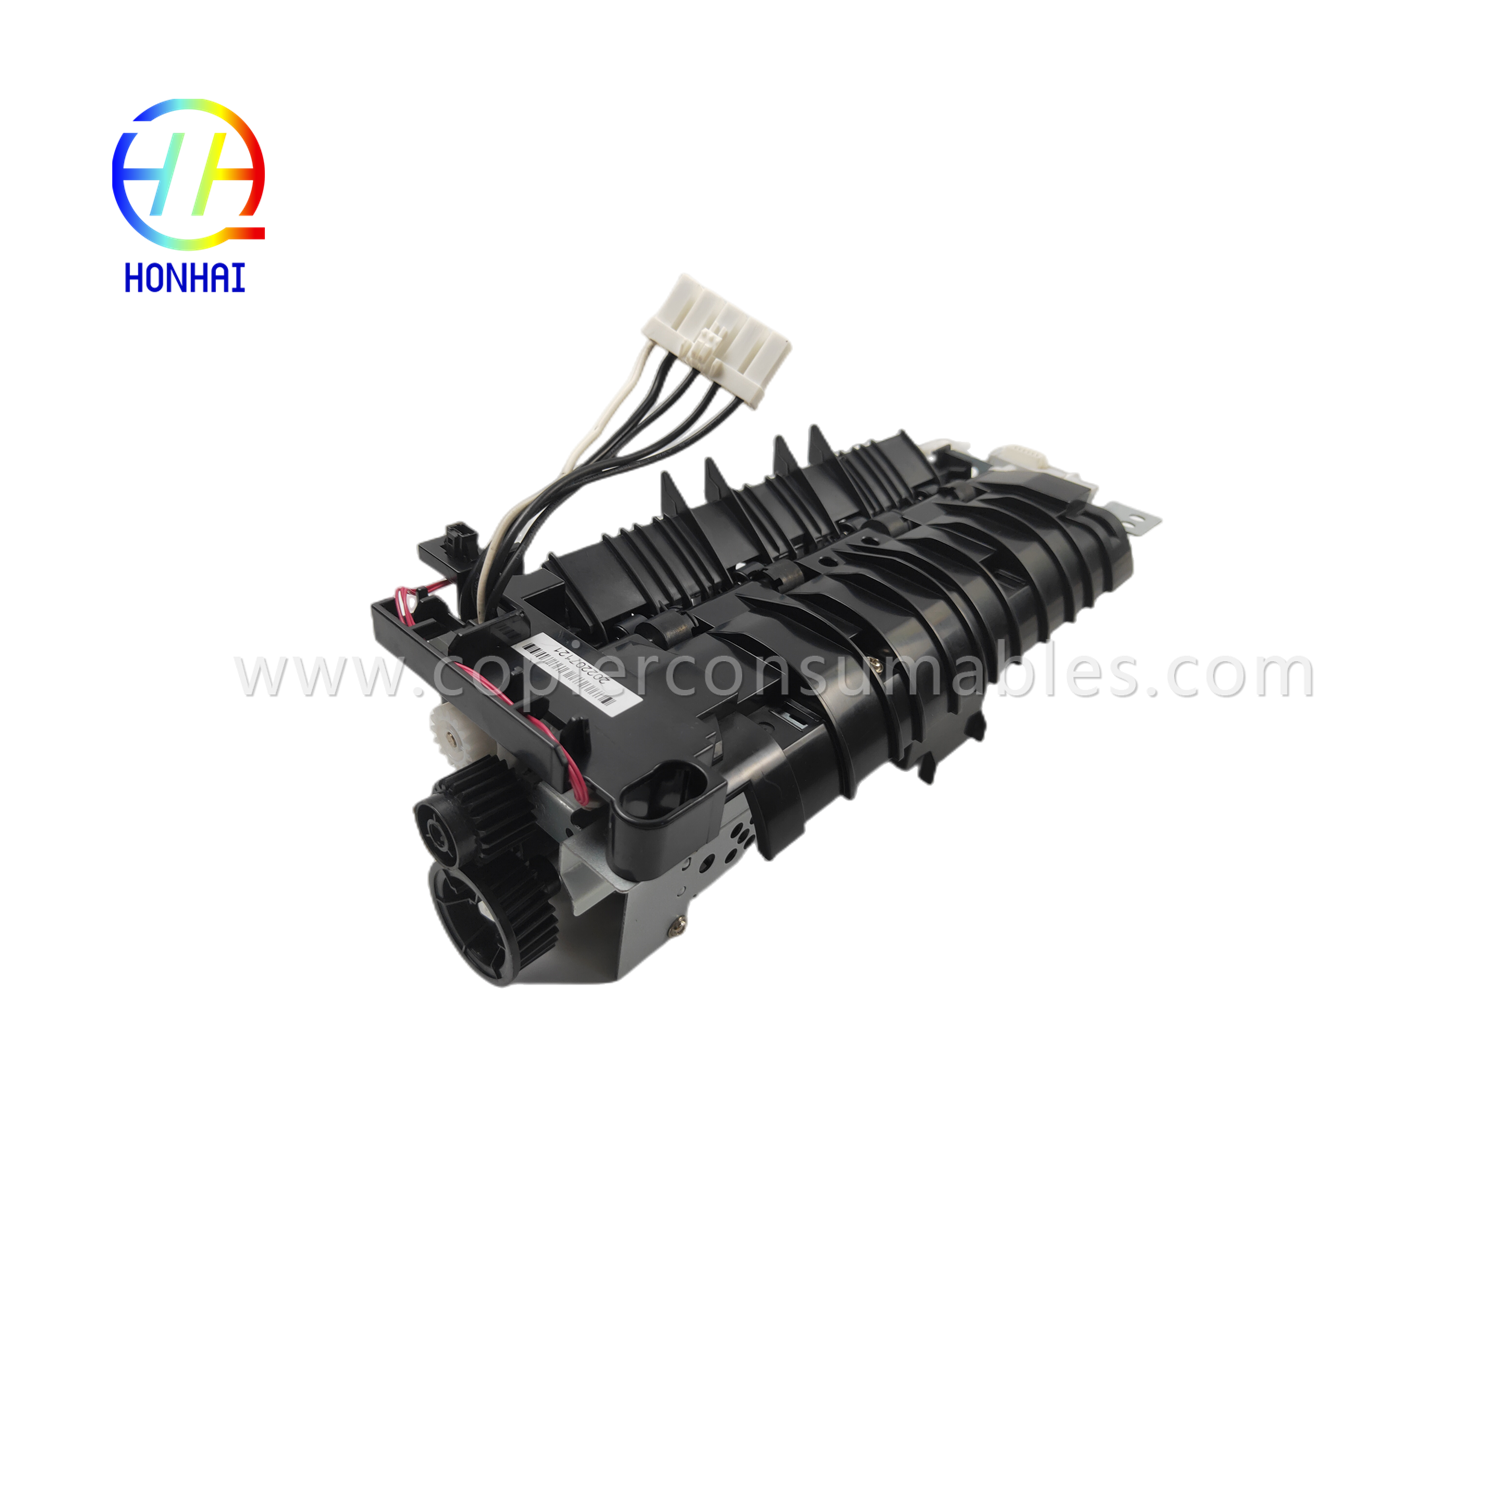 https://c585.goodo.net/fuser-assembly-220v-japan-for-hp-521-525-m521-m525-rm1-8508-rm1-8508-000-fuser-unit-product/